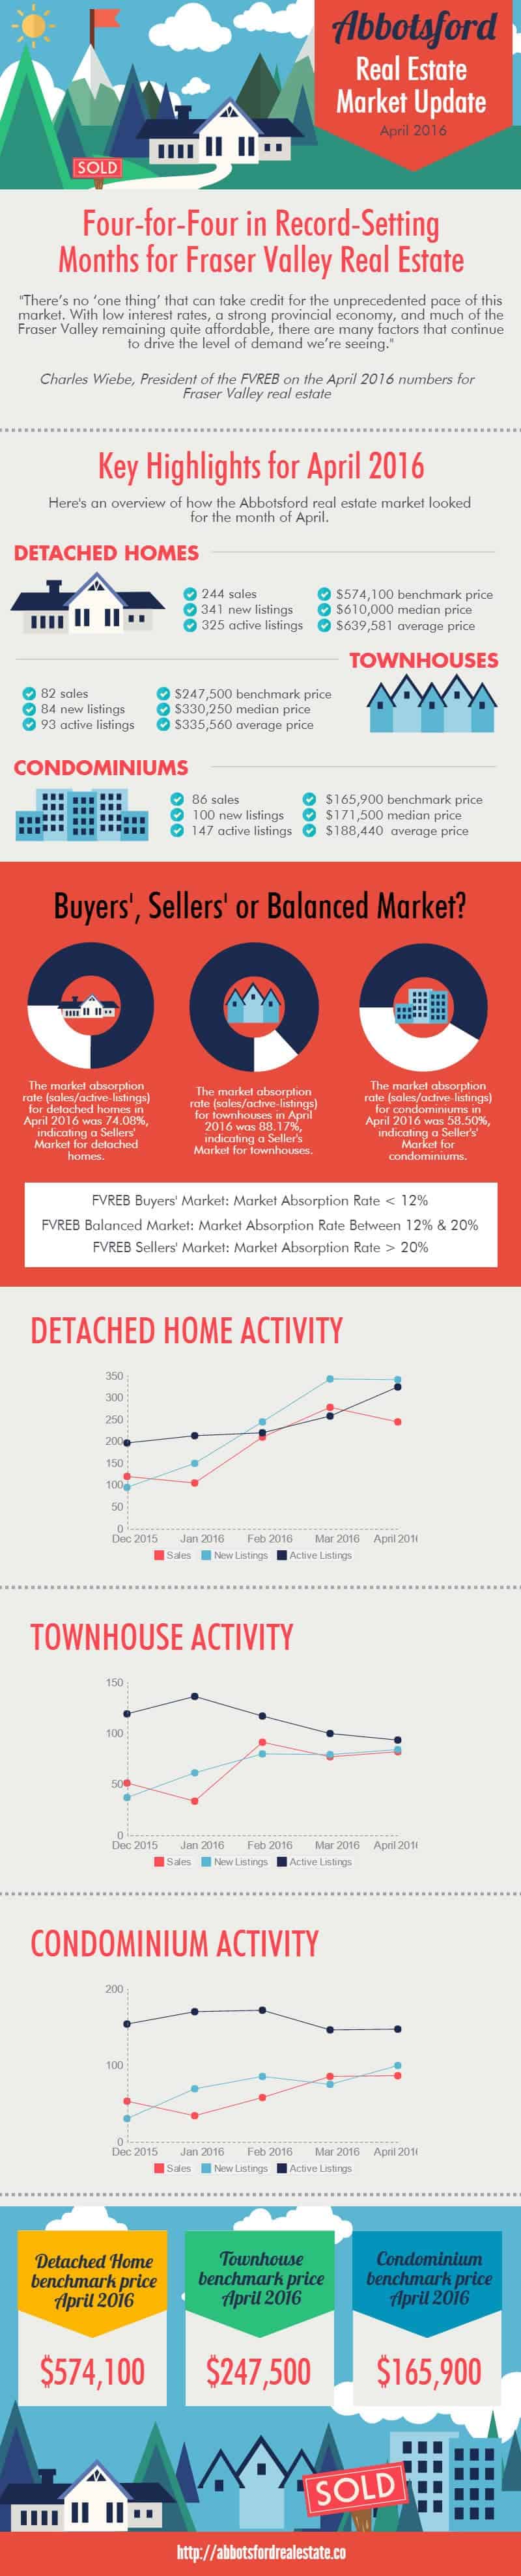 Abbotsford Condominium Market Update April 2016 Infographic